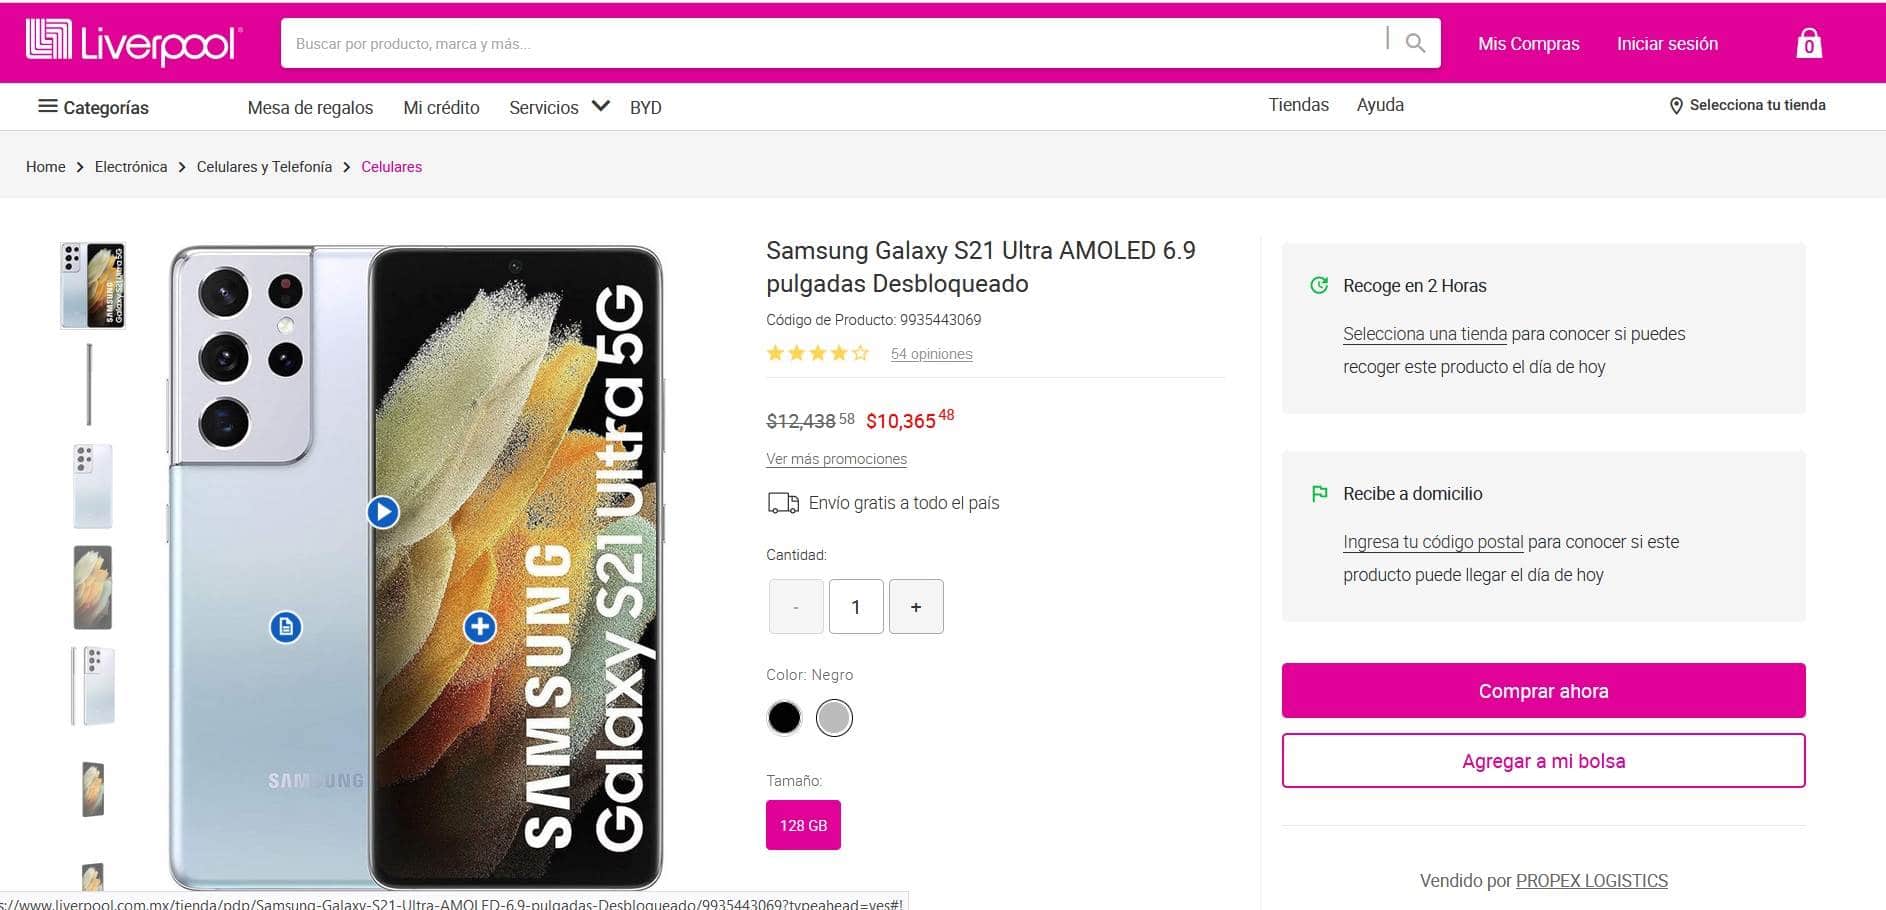 Smartphone Samsung Galaxy S21 Ultra con rebaja en Liverpool